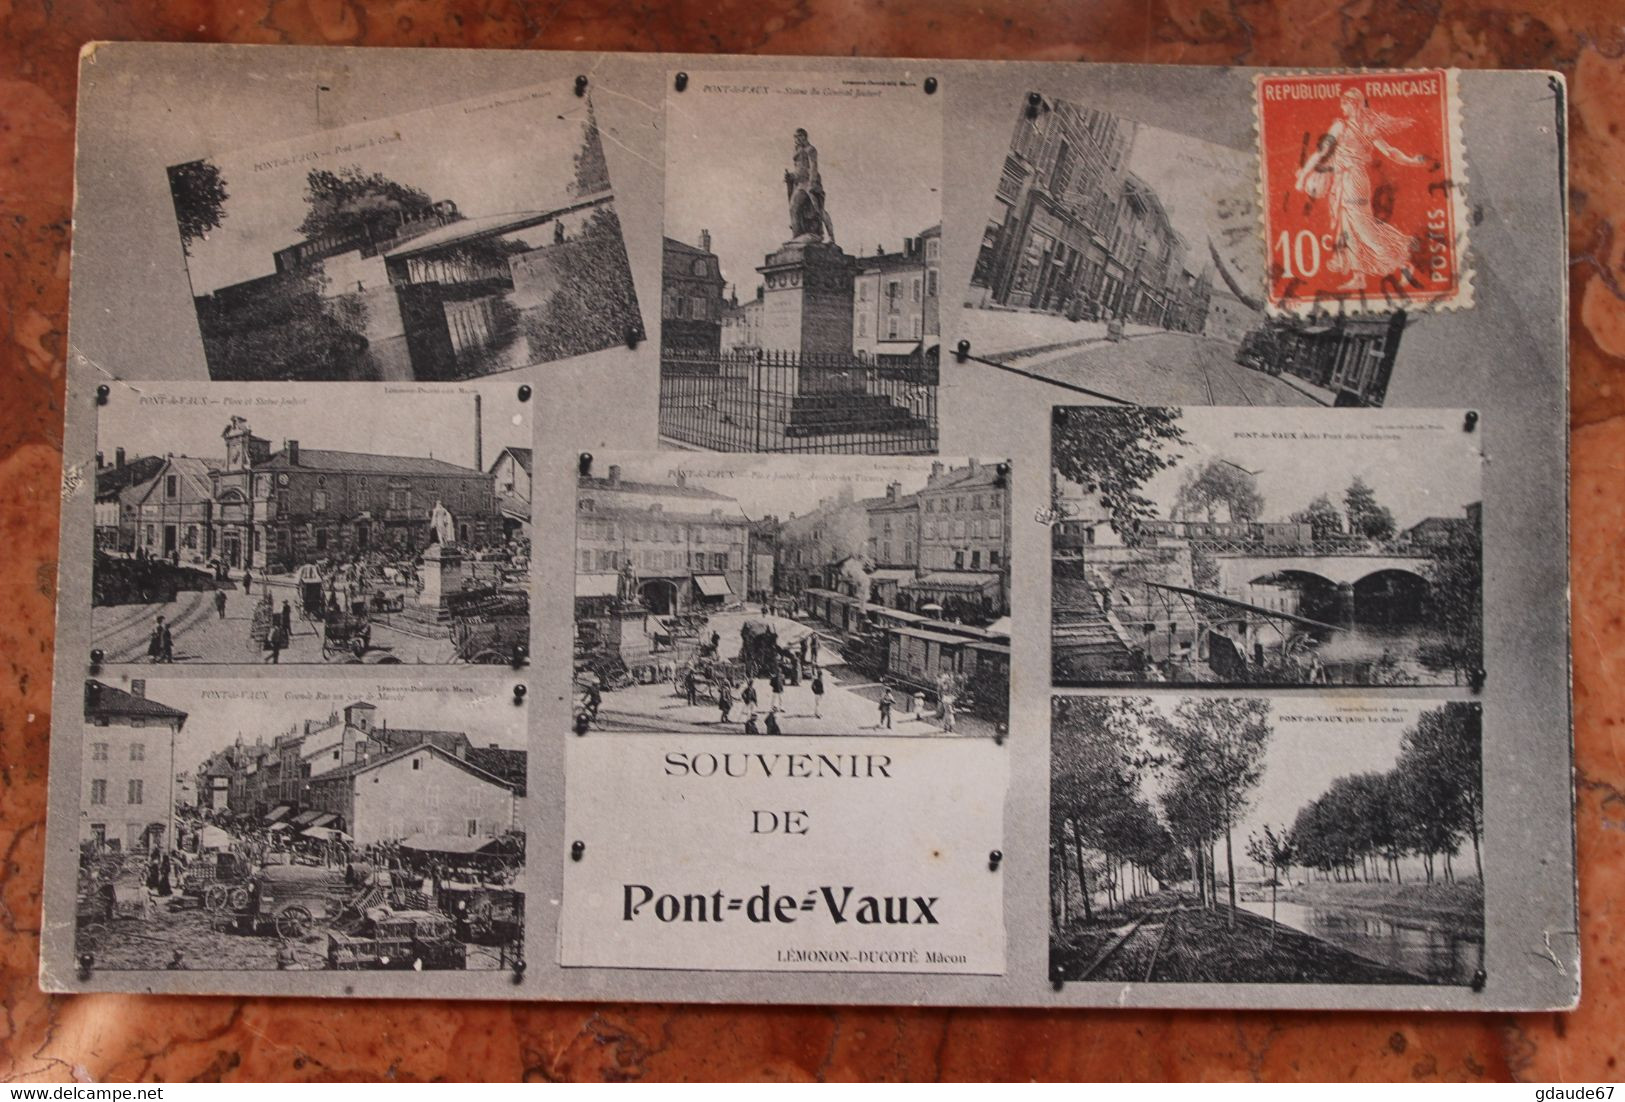 PONT-DE-VAUX (01) - SOUVENIR - Pont-de-Vaux